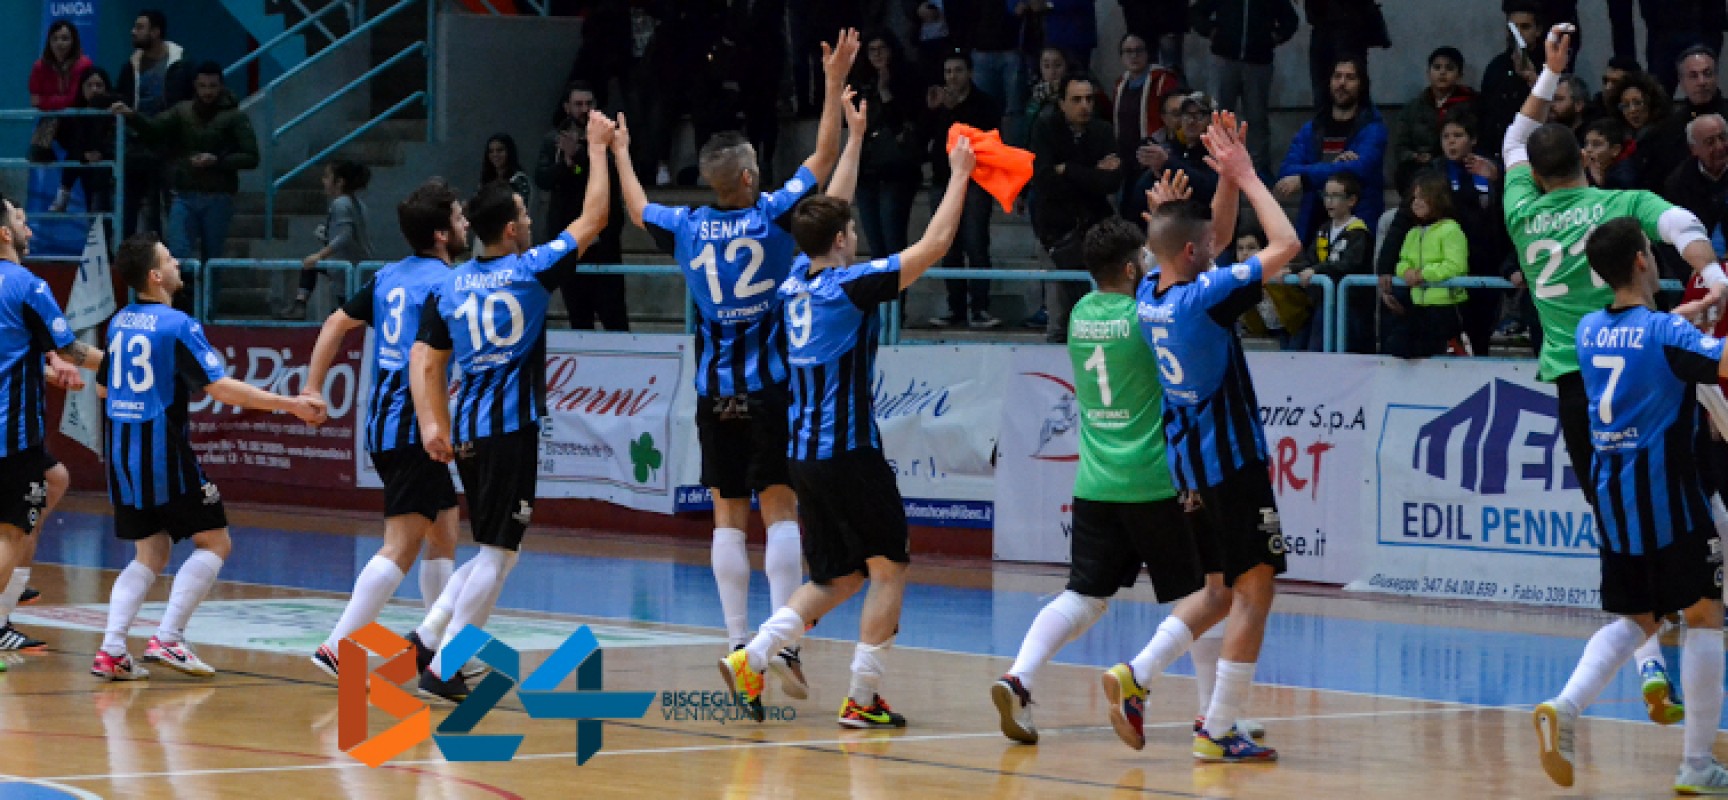 Futsal Bisceglie: la corsa continua, eliminato il Cisternino